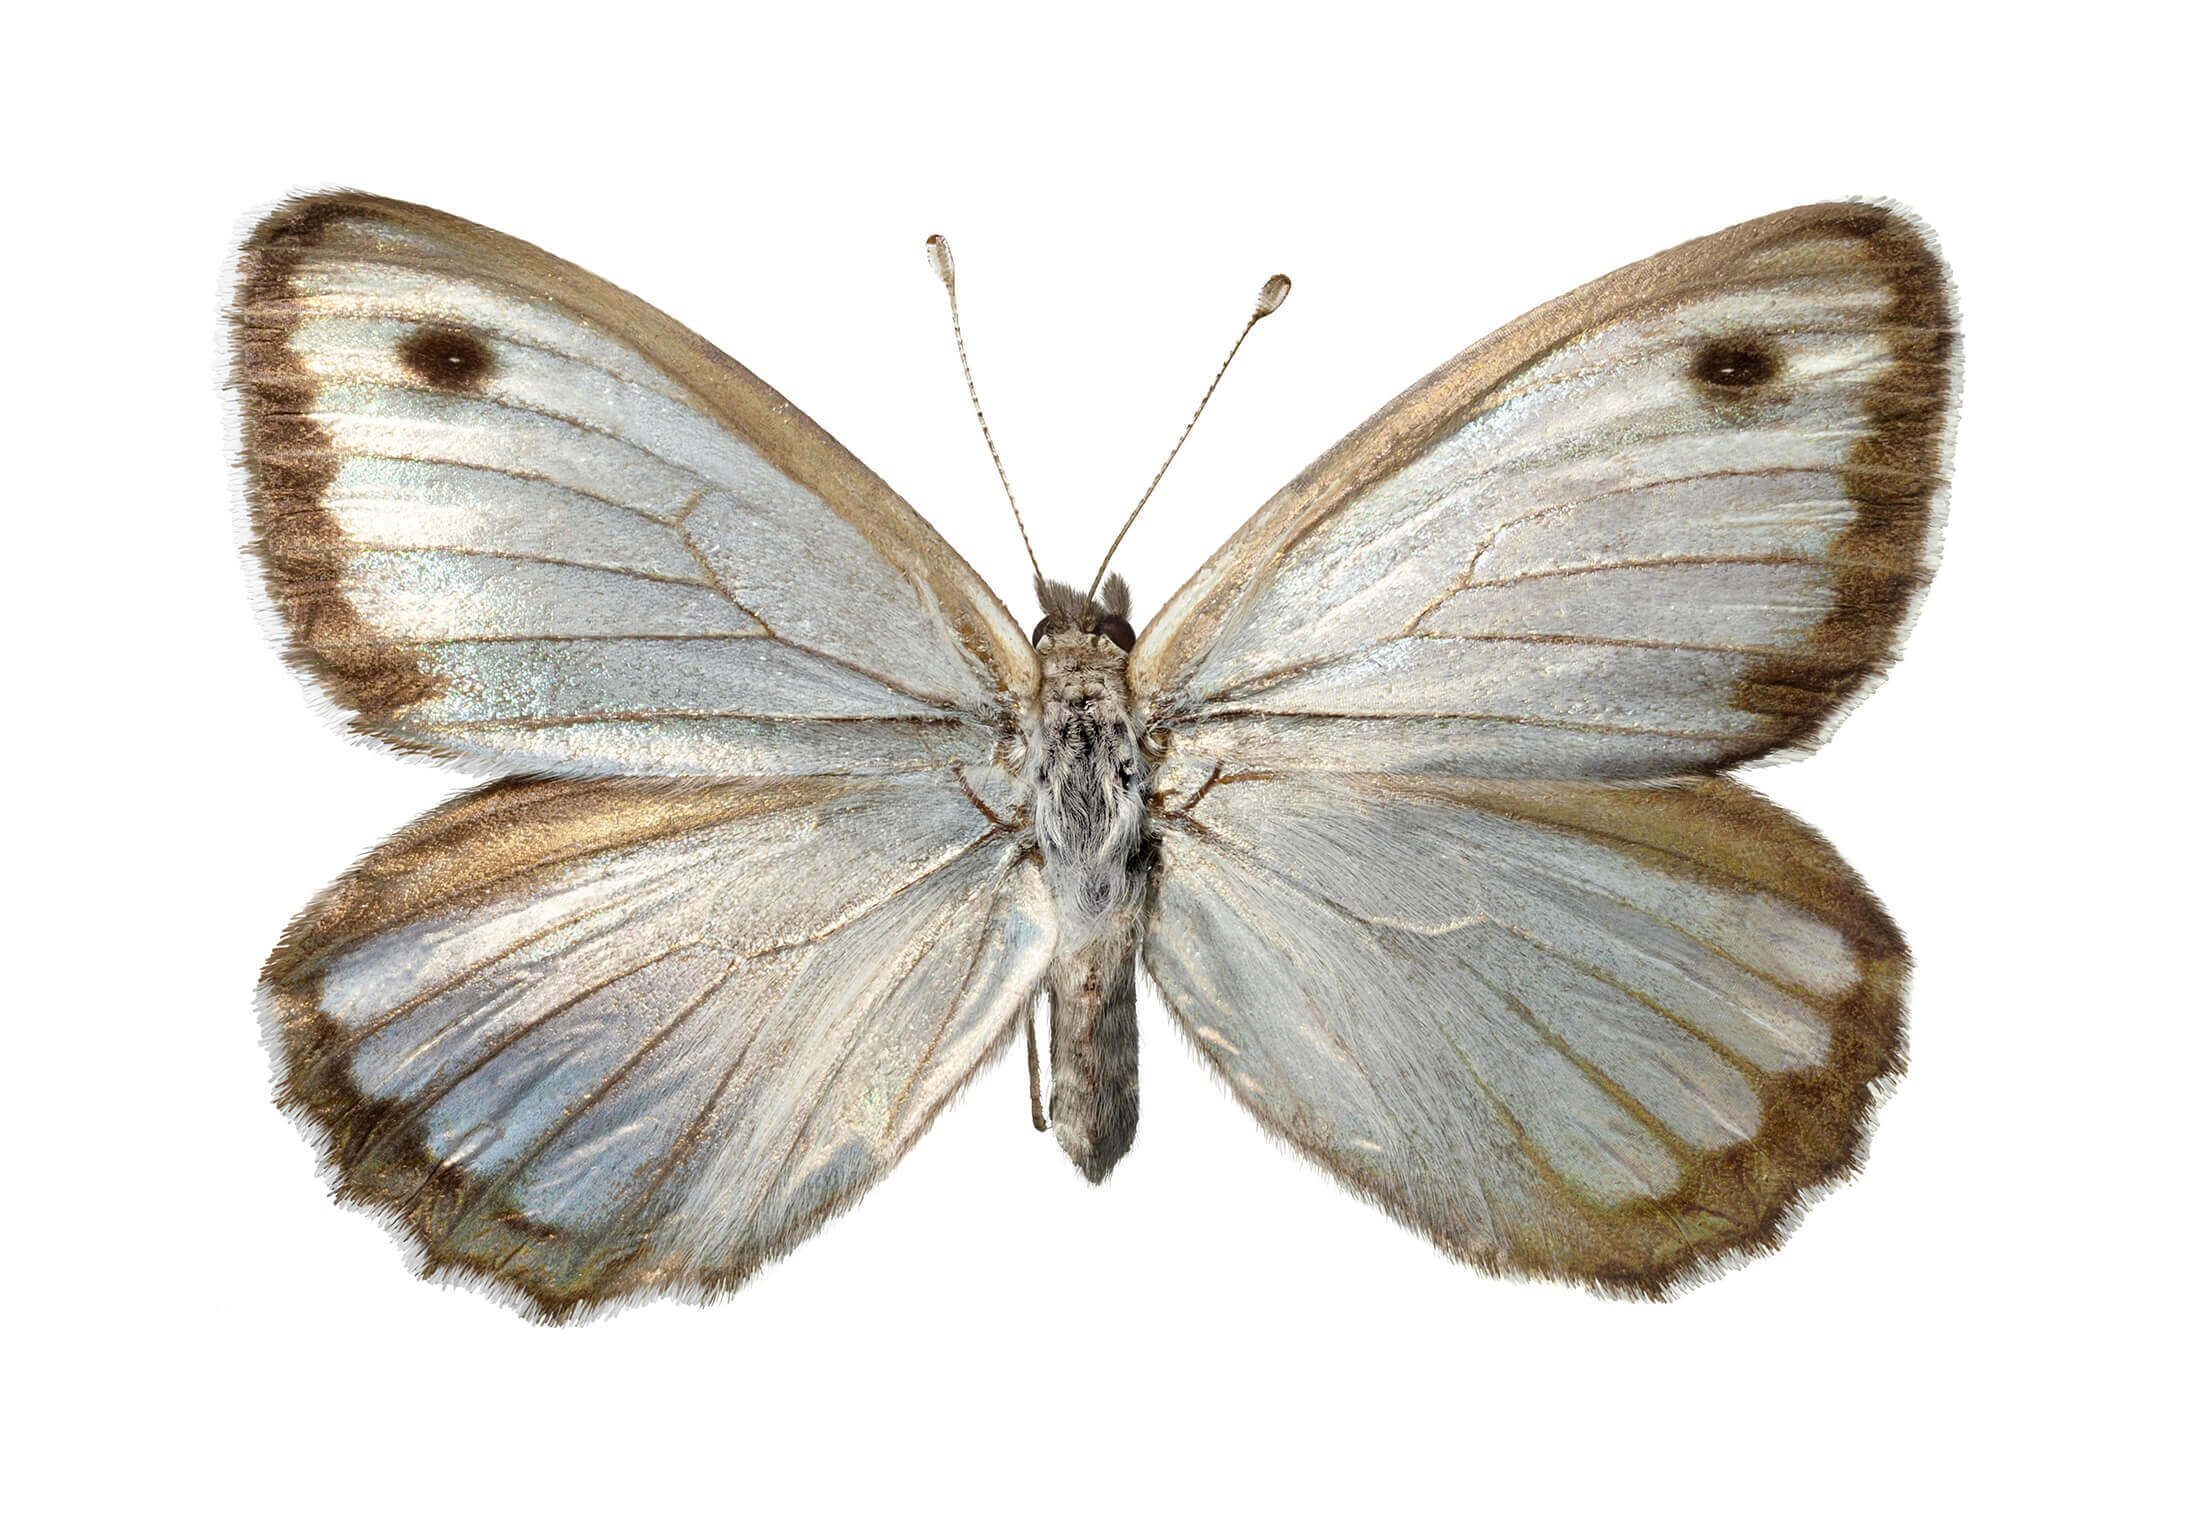 Mariposa plateada (Argyrophorus argenteus argenteus). Es la única mariposa plateada del mundo. Presentan dimorfismo sexual: los machos son completamente plateados, mientras que las hembras son un poco mas opacas y tienen un borde café oscuro en sus alas (como el ejemplar de la imagen).